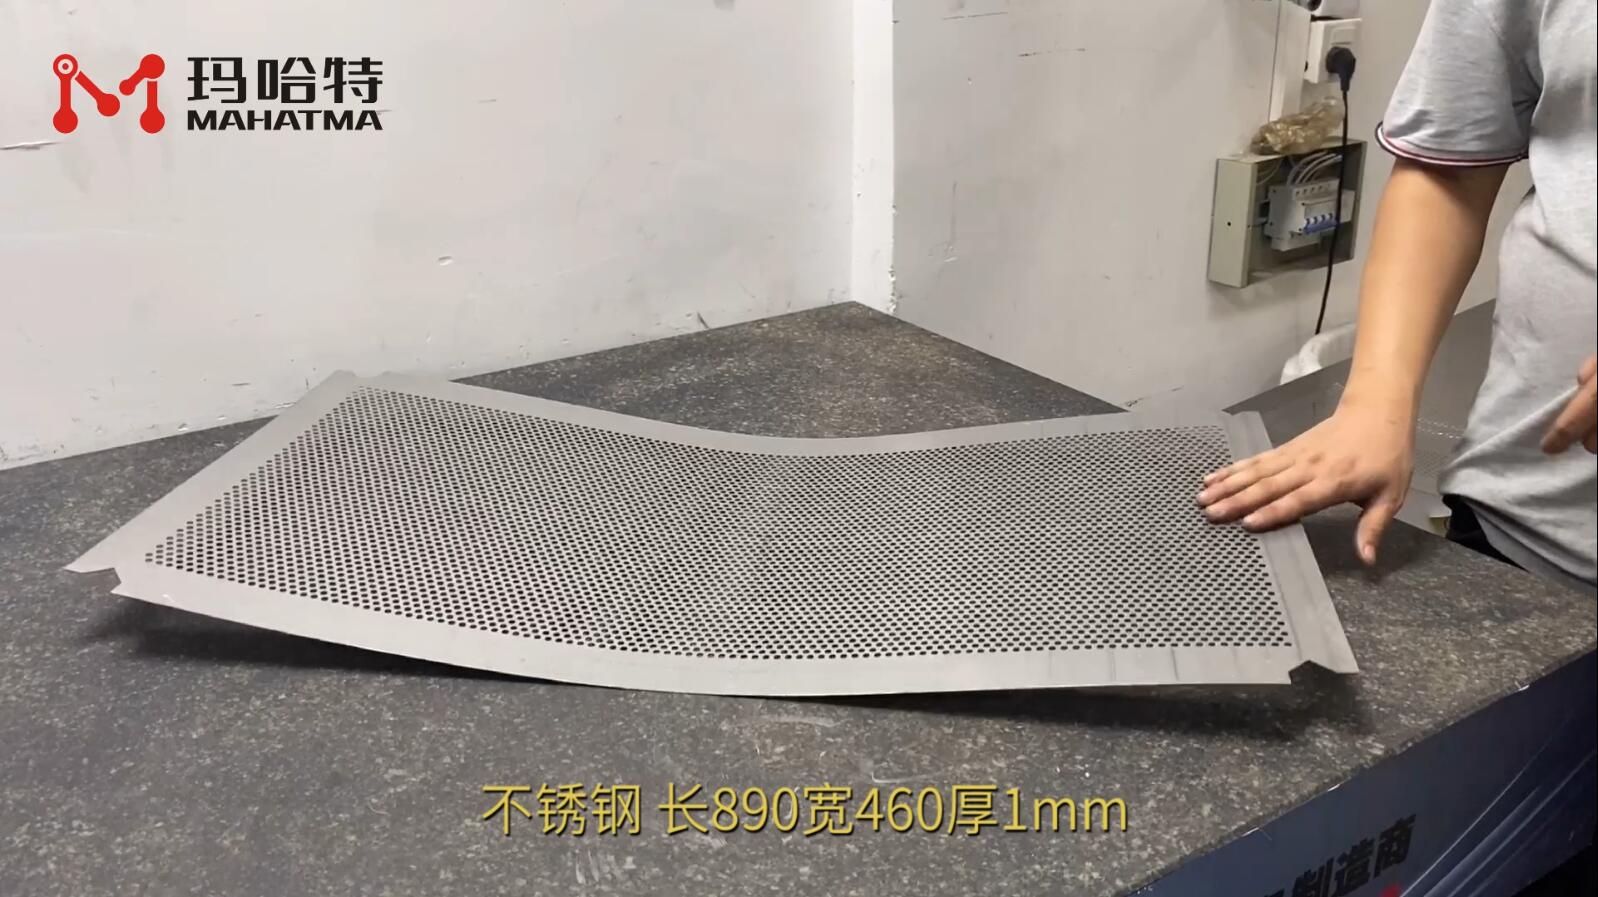 不锈钢网板 MHT50-1300 长方形 长890宽460厚1mm